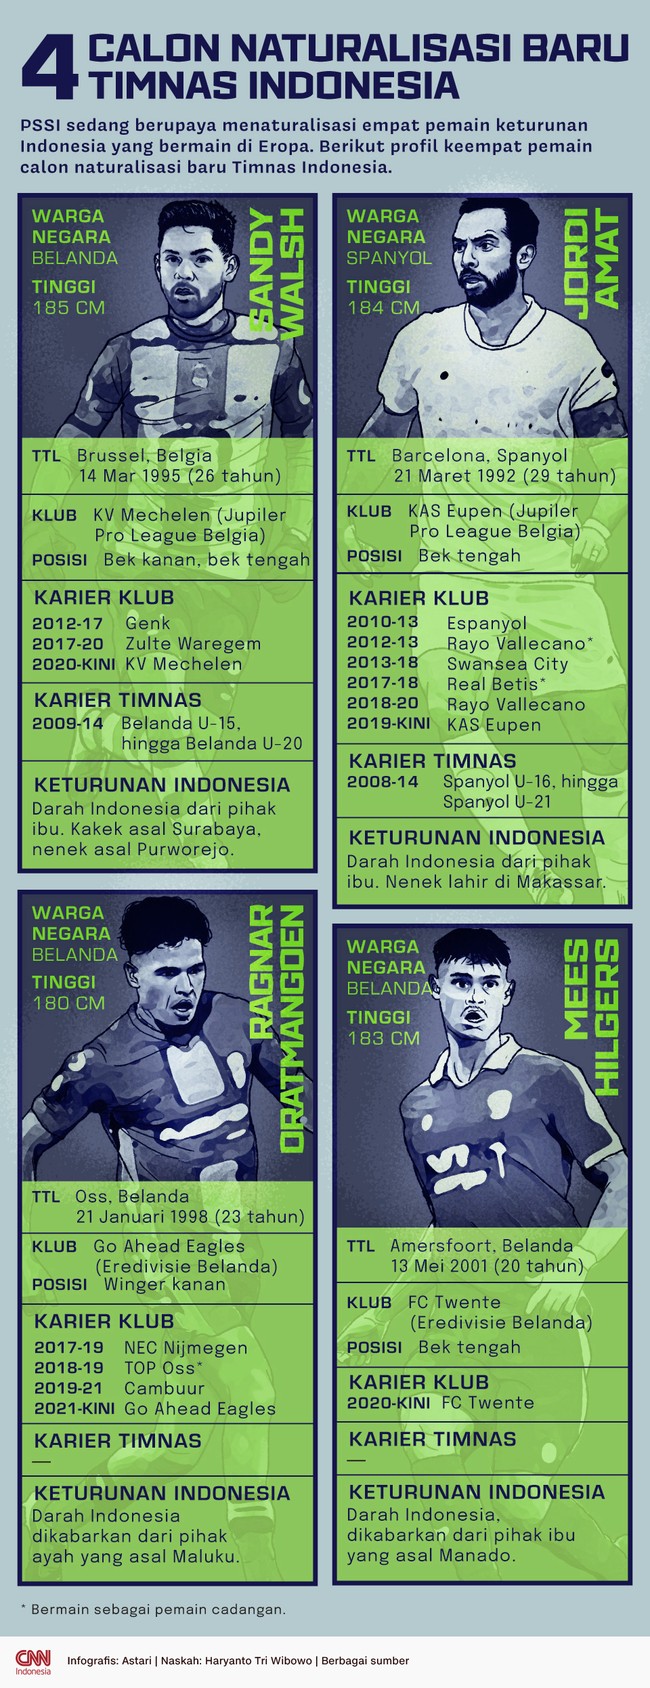 Berikut profil keempat pemain calon naturalisasi baru Timnas Indonesia yang sedang diupayakan PSSI.